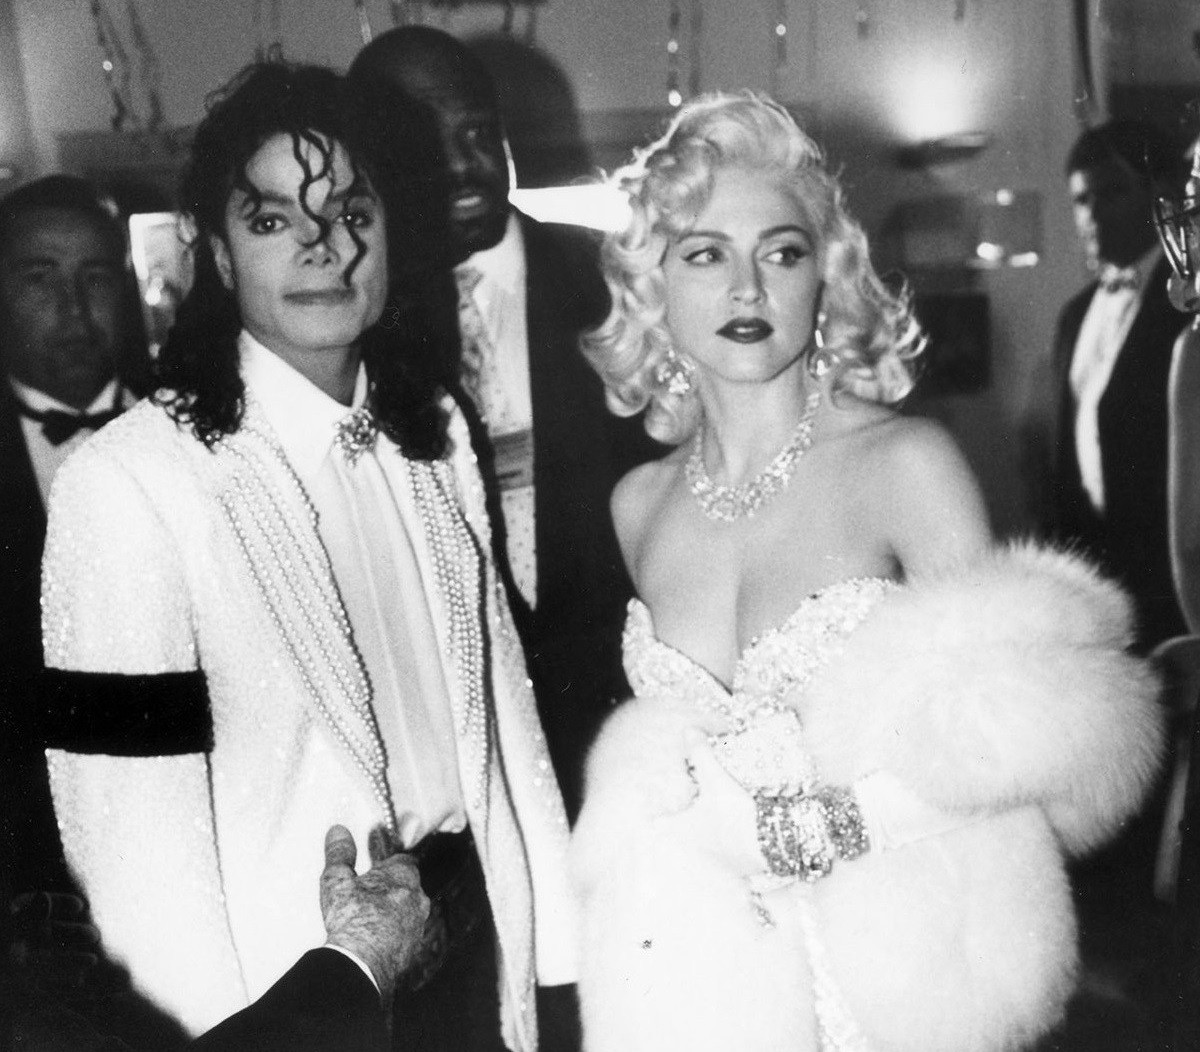 📷 | Fotografia rara do After Party do Oscar 1991 por Pierre Giles registra dois dos maiores astros da história da música, o Rei e Rainha do Pop, Michael Jackson e Madonna